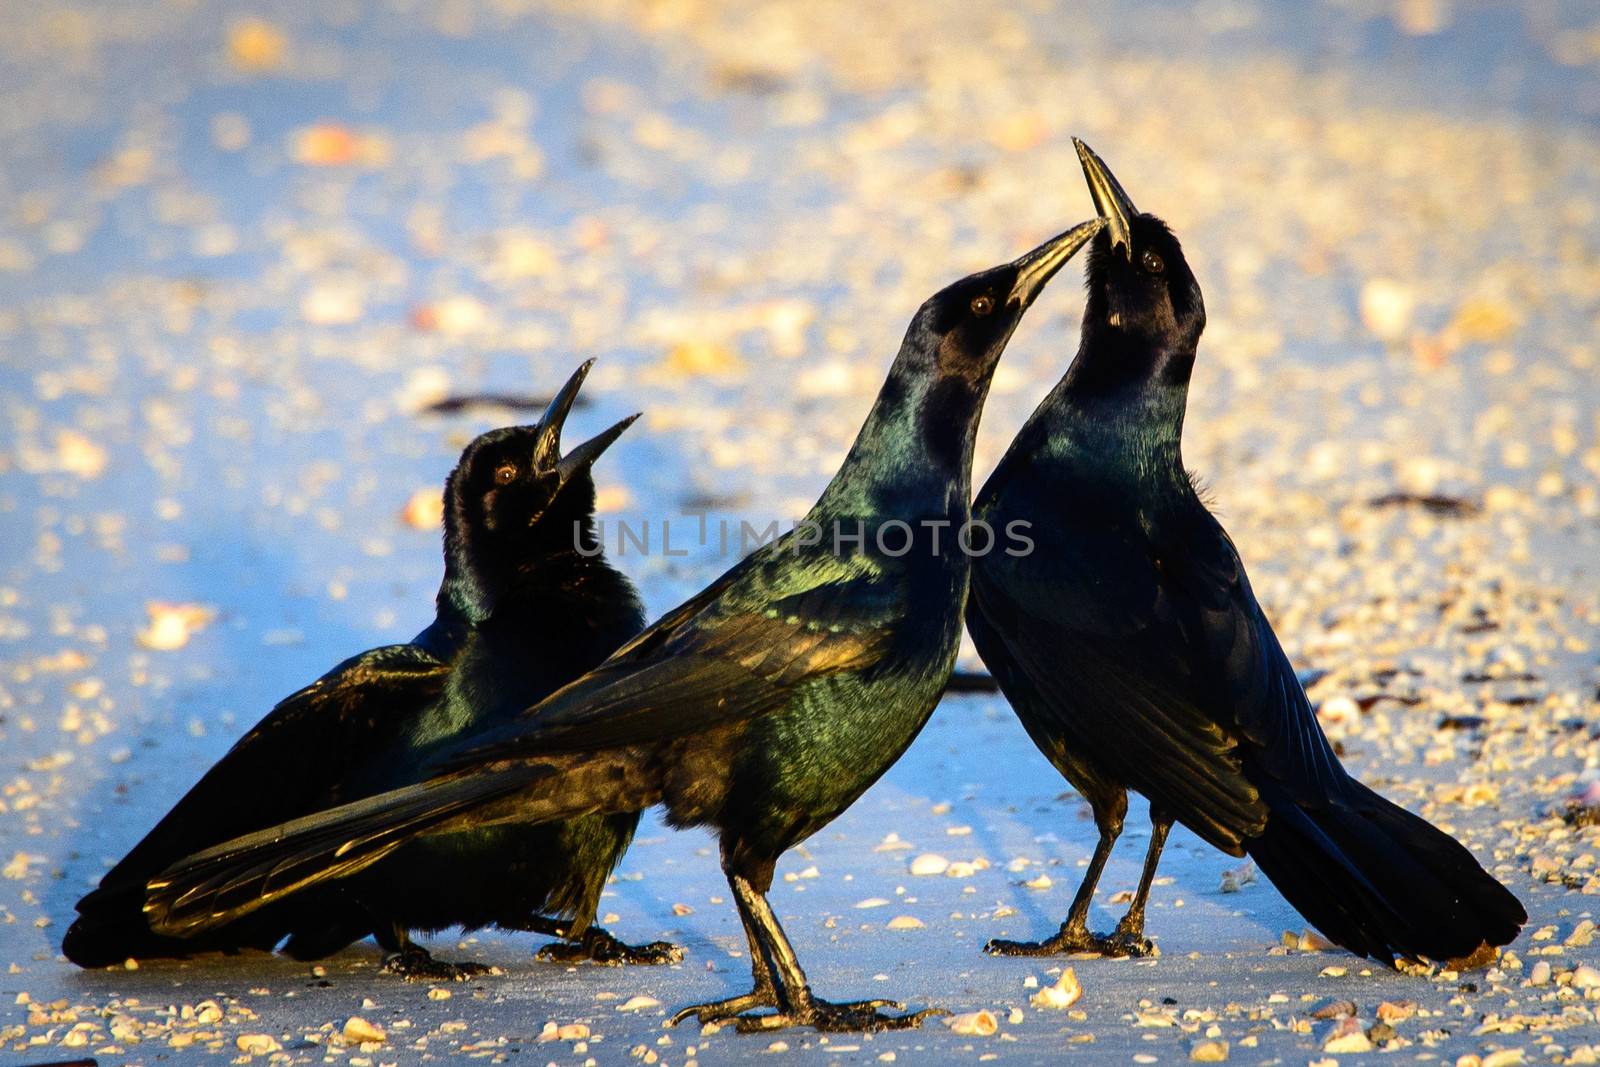 Black birds by CelsoDiniz